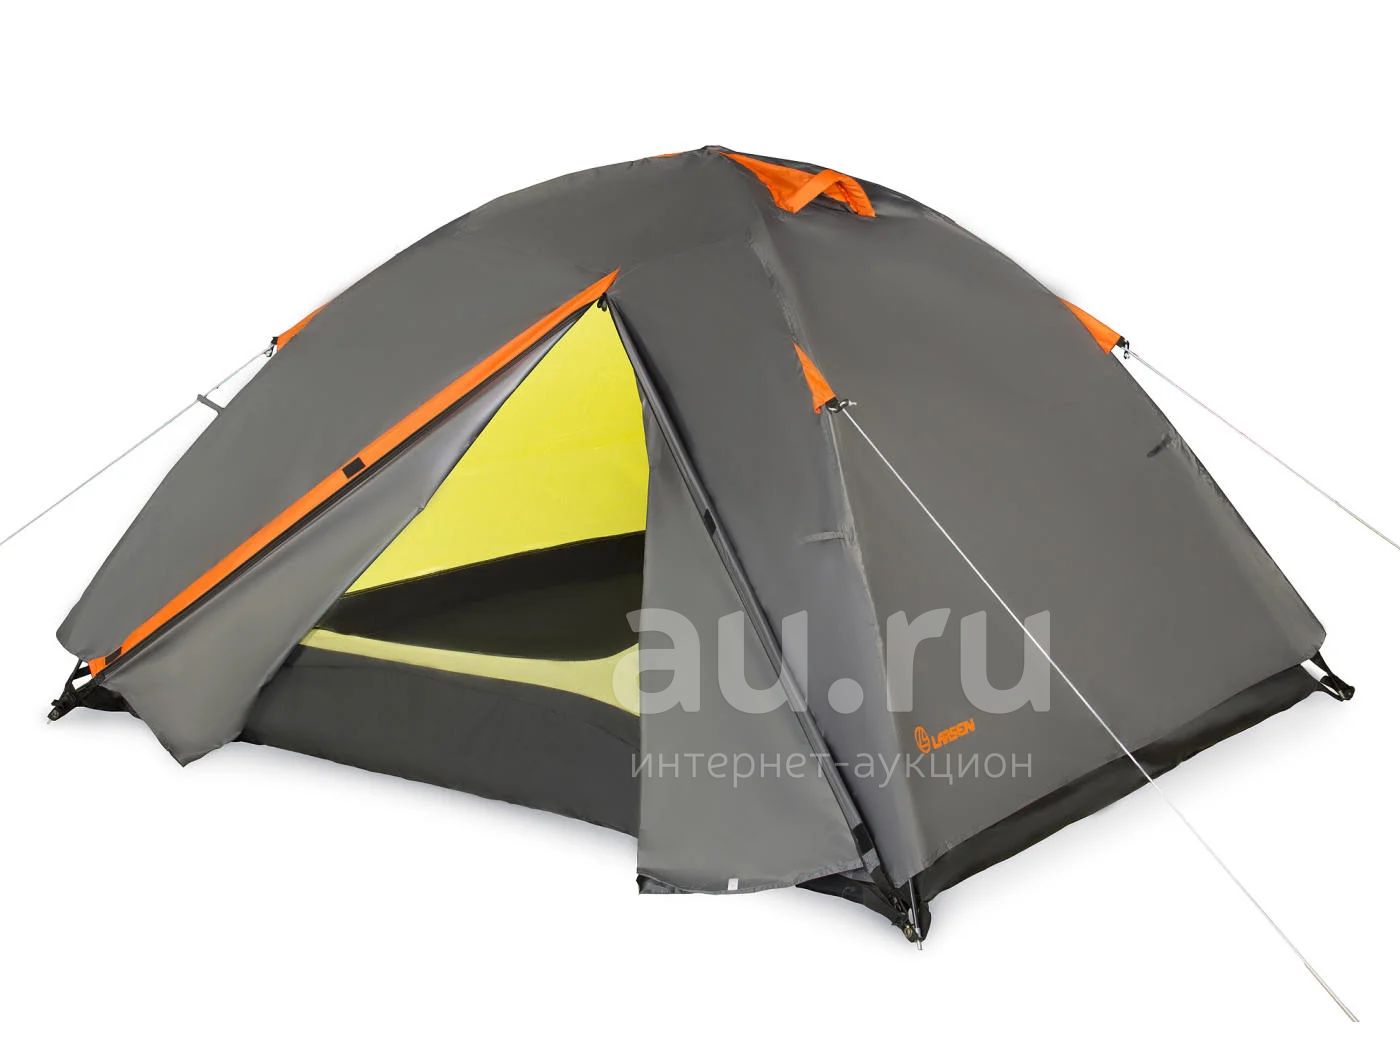 Купить палатку 2х. Палатка Larsen a2 Quest. Ларсен палатка 2 местная. Палатка Larsen b3. Палатка Larsen super 2.